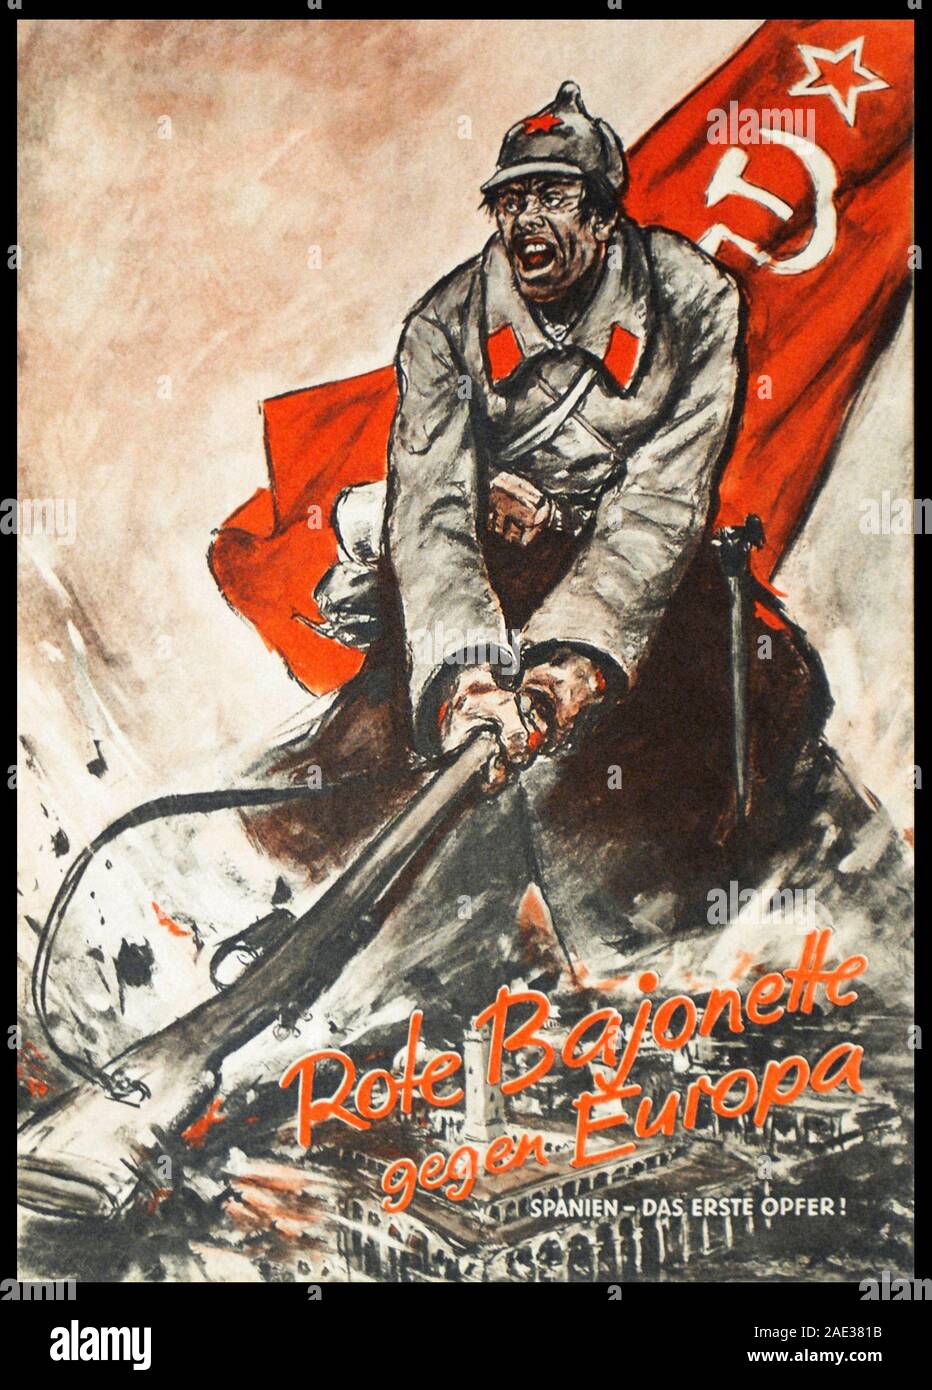 Les baïonnettes rouges contre l'Europe. Espagne - la première victime. Anti-сommunist allemand de l'affiche. Moment de la guerre civile espagnole, 1936-1939 Banque D'Images